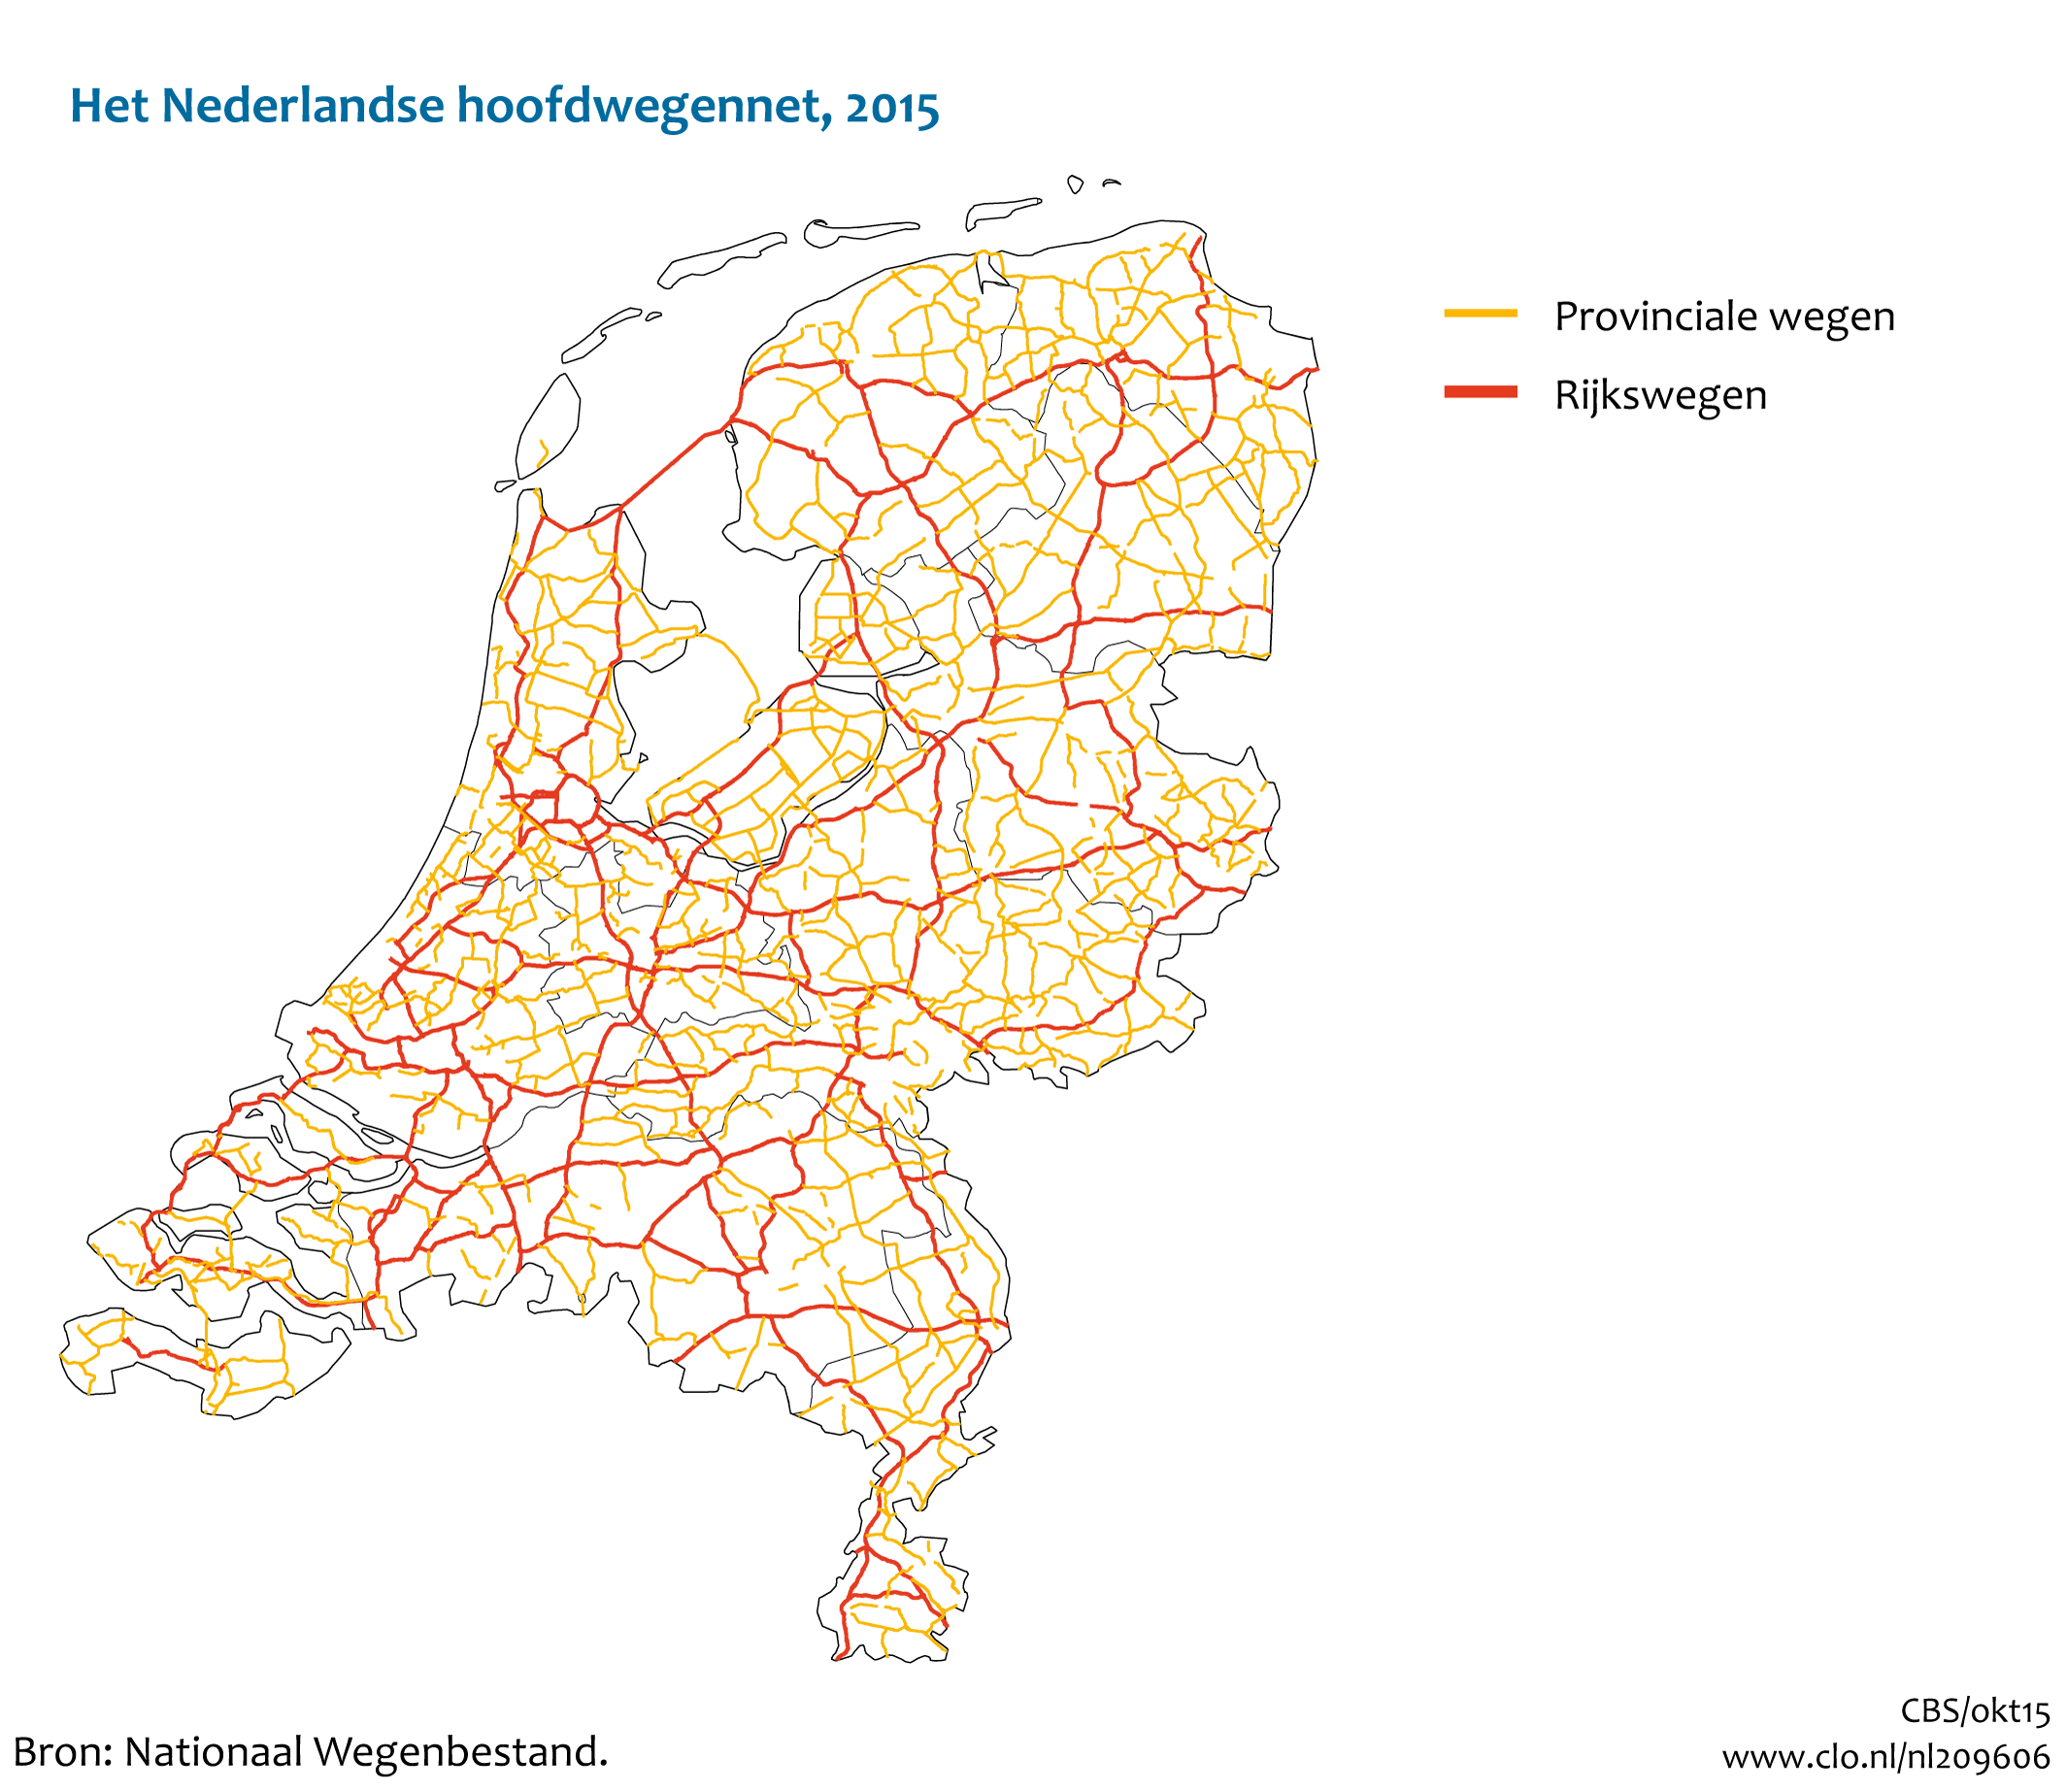 Figuur  Het Nederlandse hoofdwegennet, 2015. In de rest van de tekst wordt deze figuur uitgebreider uitgelegd.